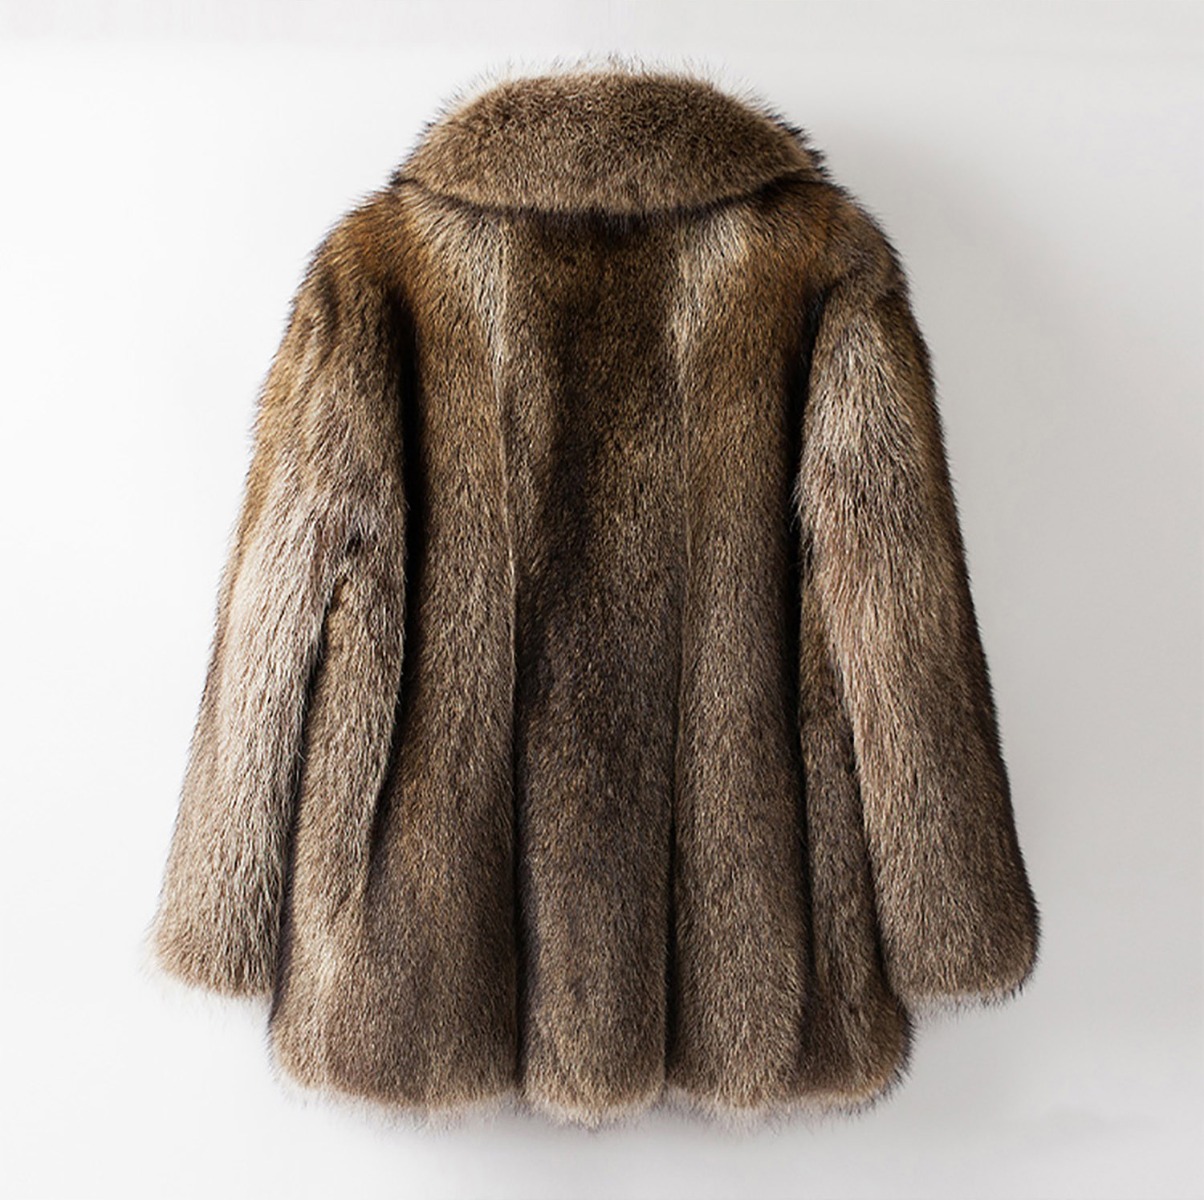 Men's Raccoon Fur Coat 0245-8